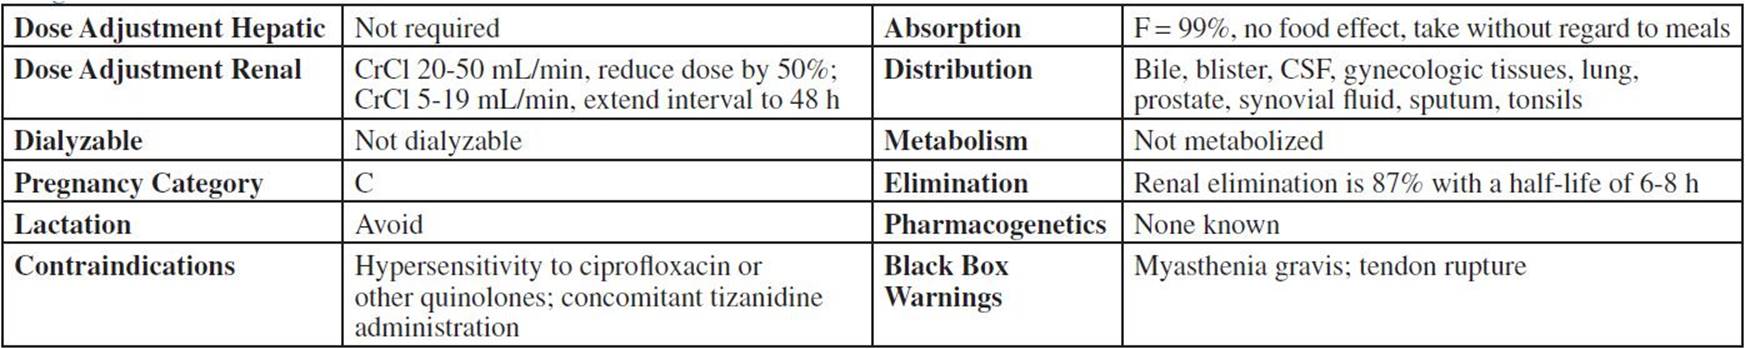 levofloxacin-levaquin-various-top-300-pharmacy-drug-cards